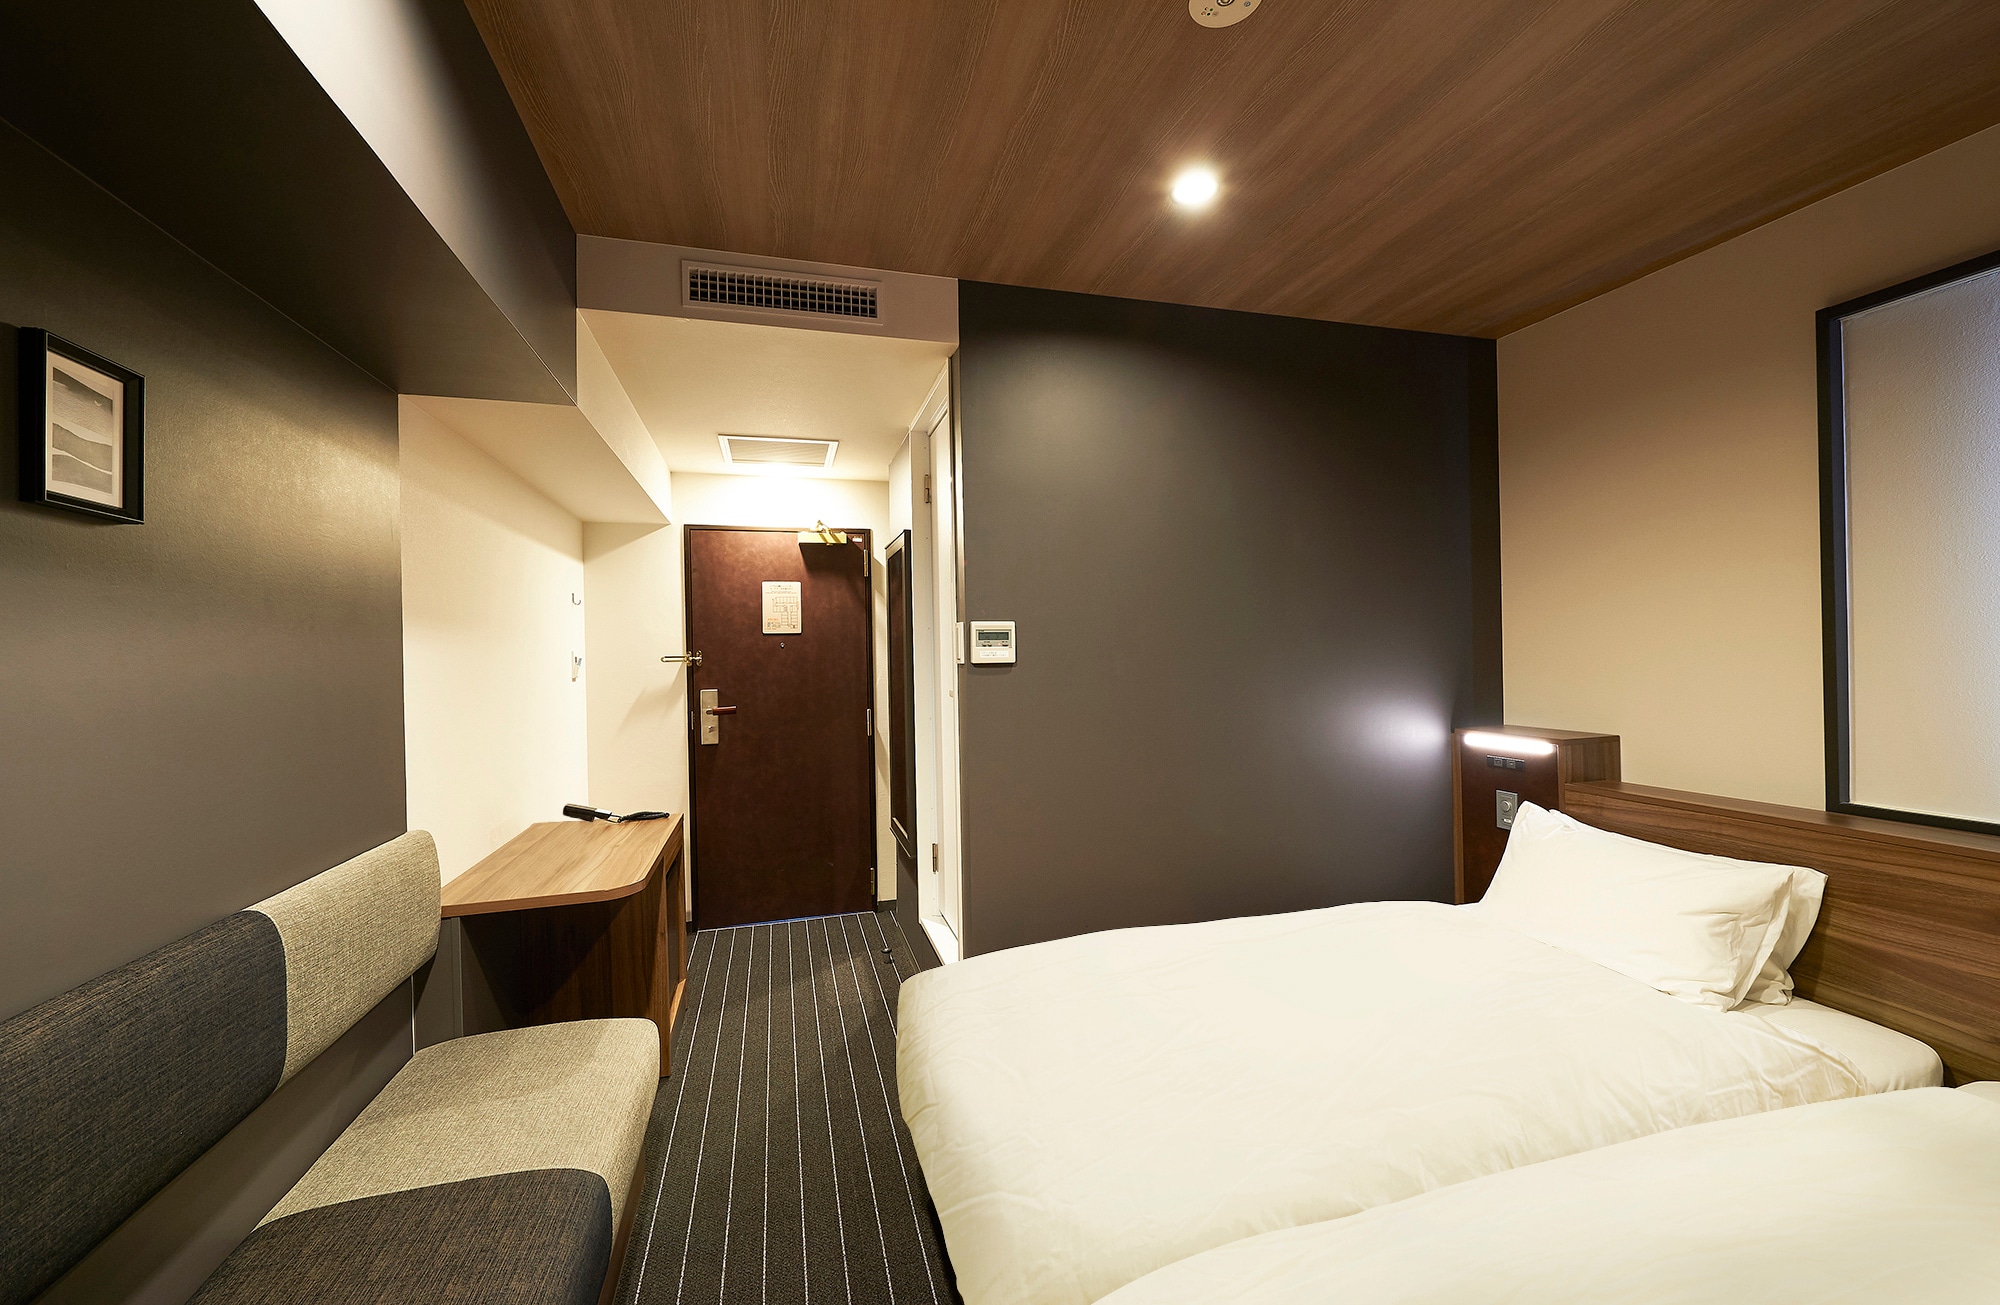 [Guest room] Twin room, 17.4㎡, bed width 100cm x 2